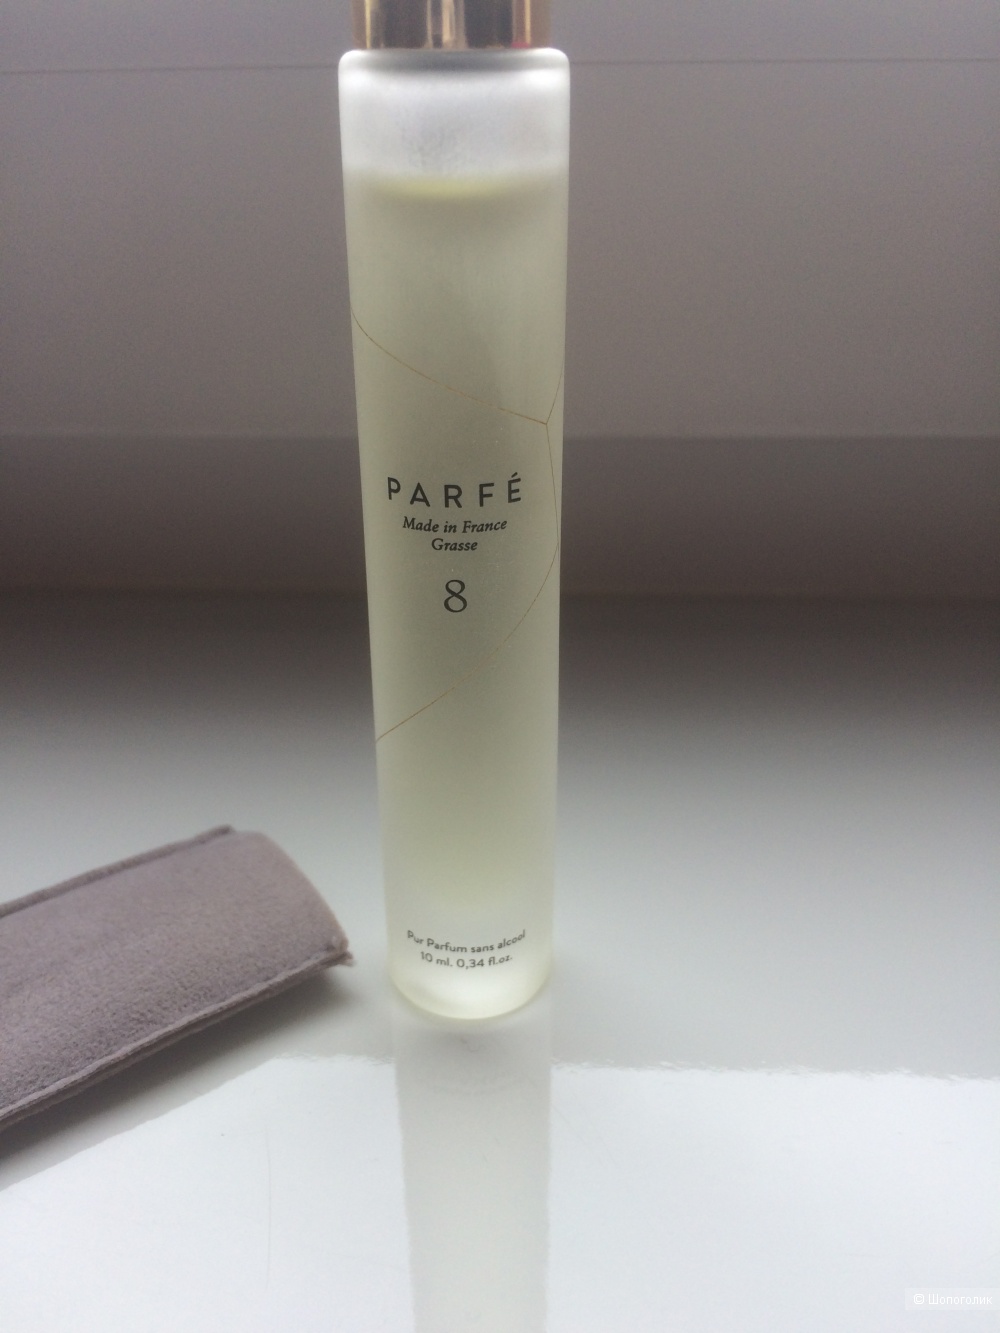 Parfe №8, PARFE Extrait